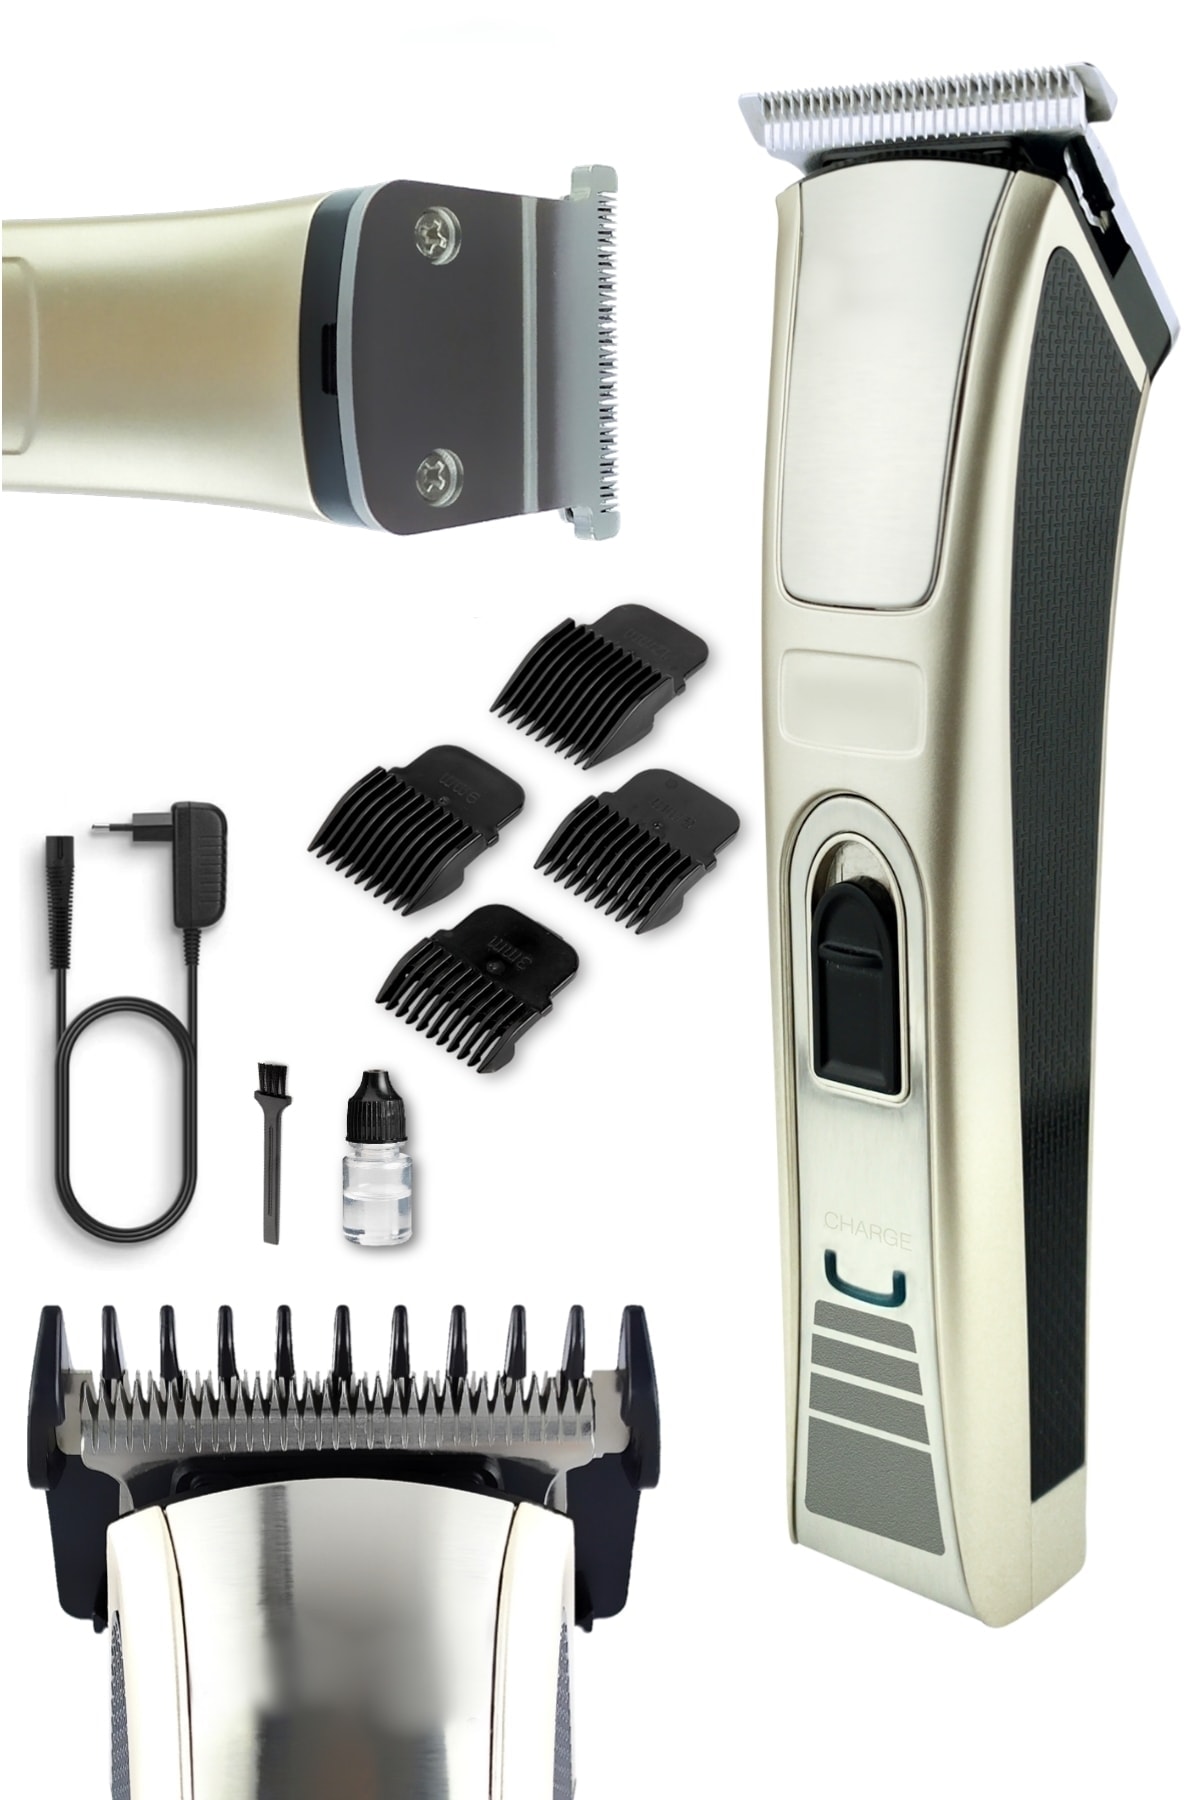 yopigo 128 Kuaför Tipi Şarjlı Saç Sakal Kesme Traş Tıraş Makinesi (LAZER EPİLASYON ÖNCESİ UYGUN BAY-BAYAN)